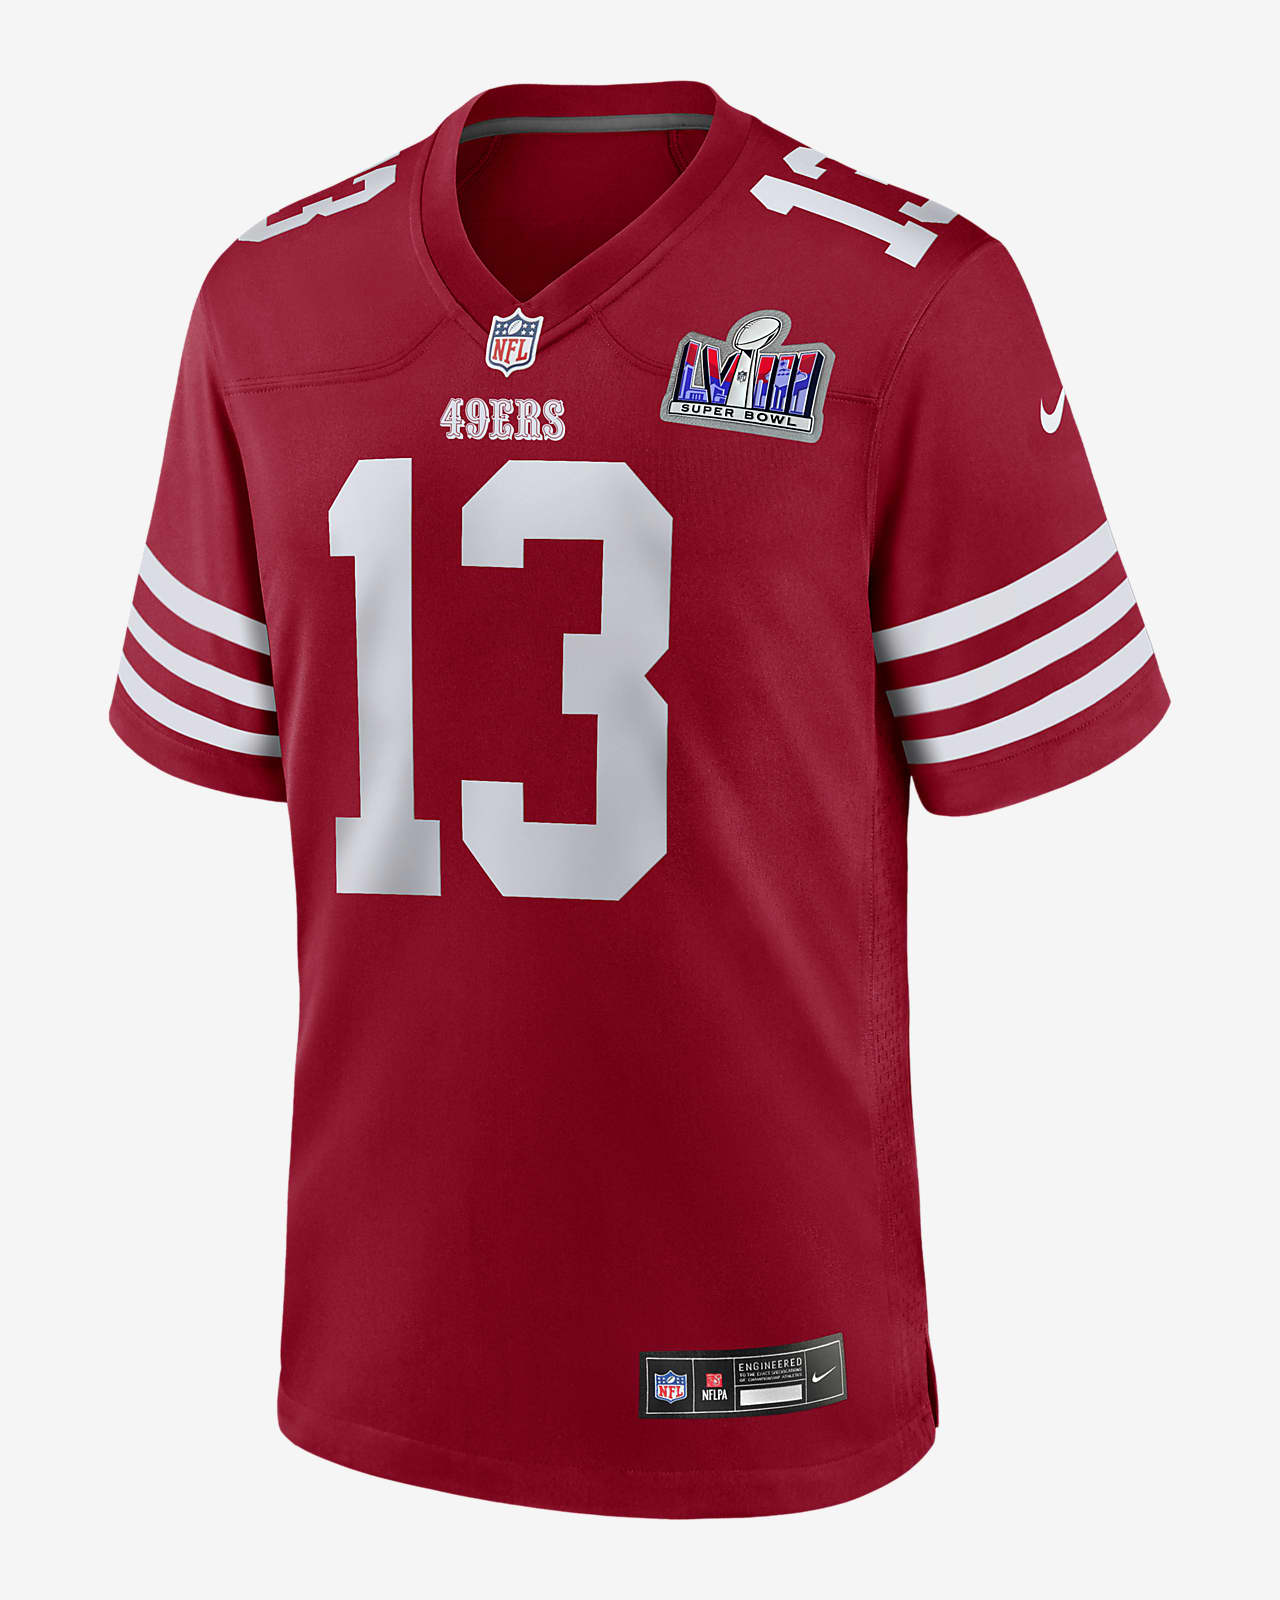 Jersey Nike de la NFL Game para hombre Brock Purdy San Francisco 49ers Super Bowl LVIII